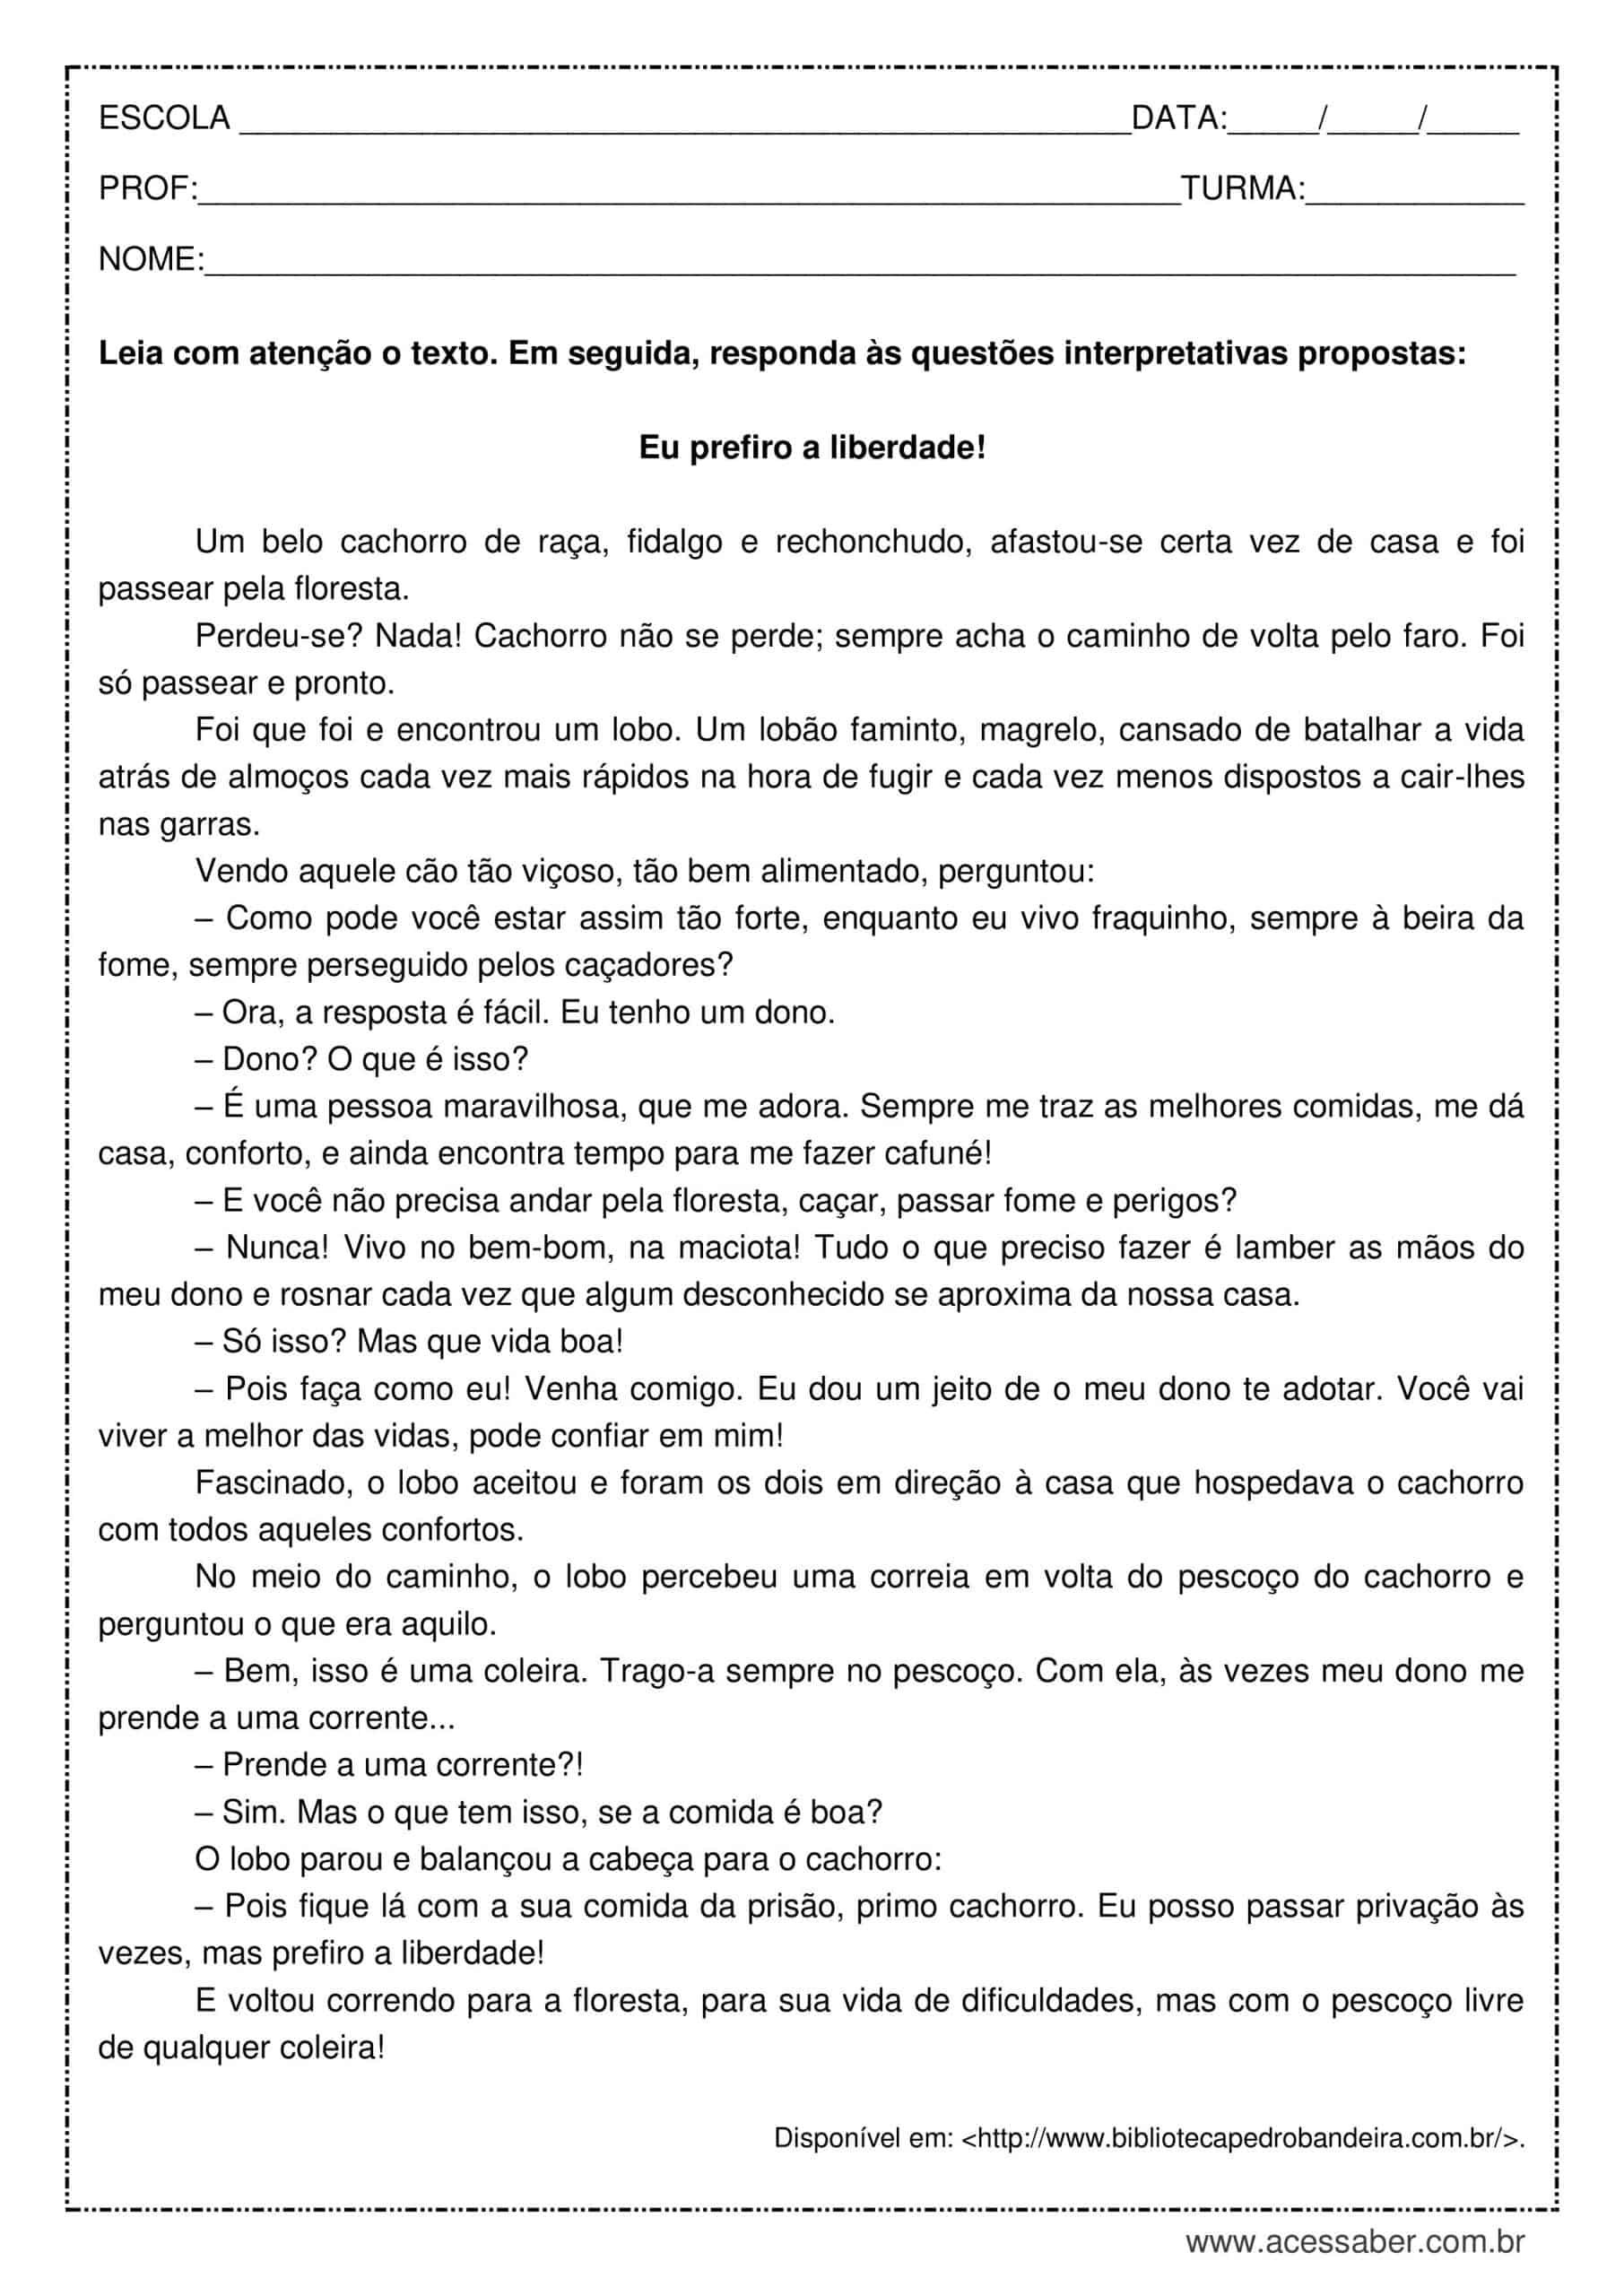 Questões de Interpretação Textual, PDF, Behaviorismo